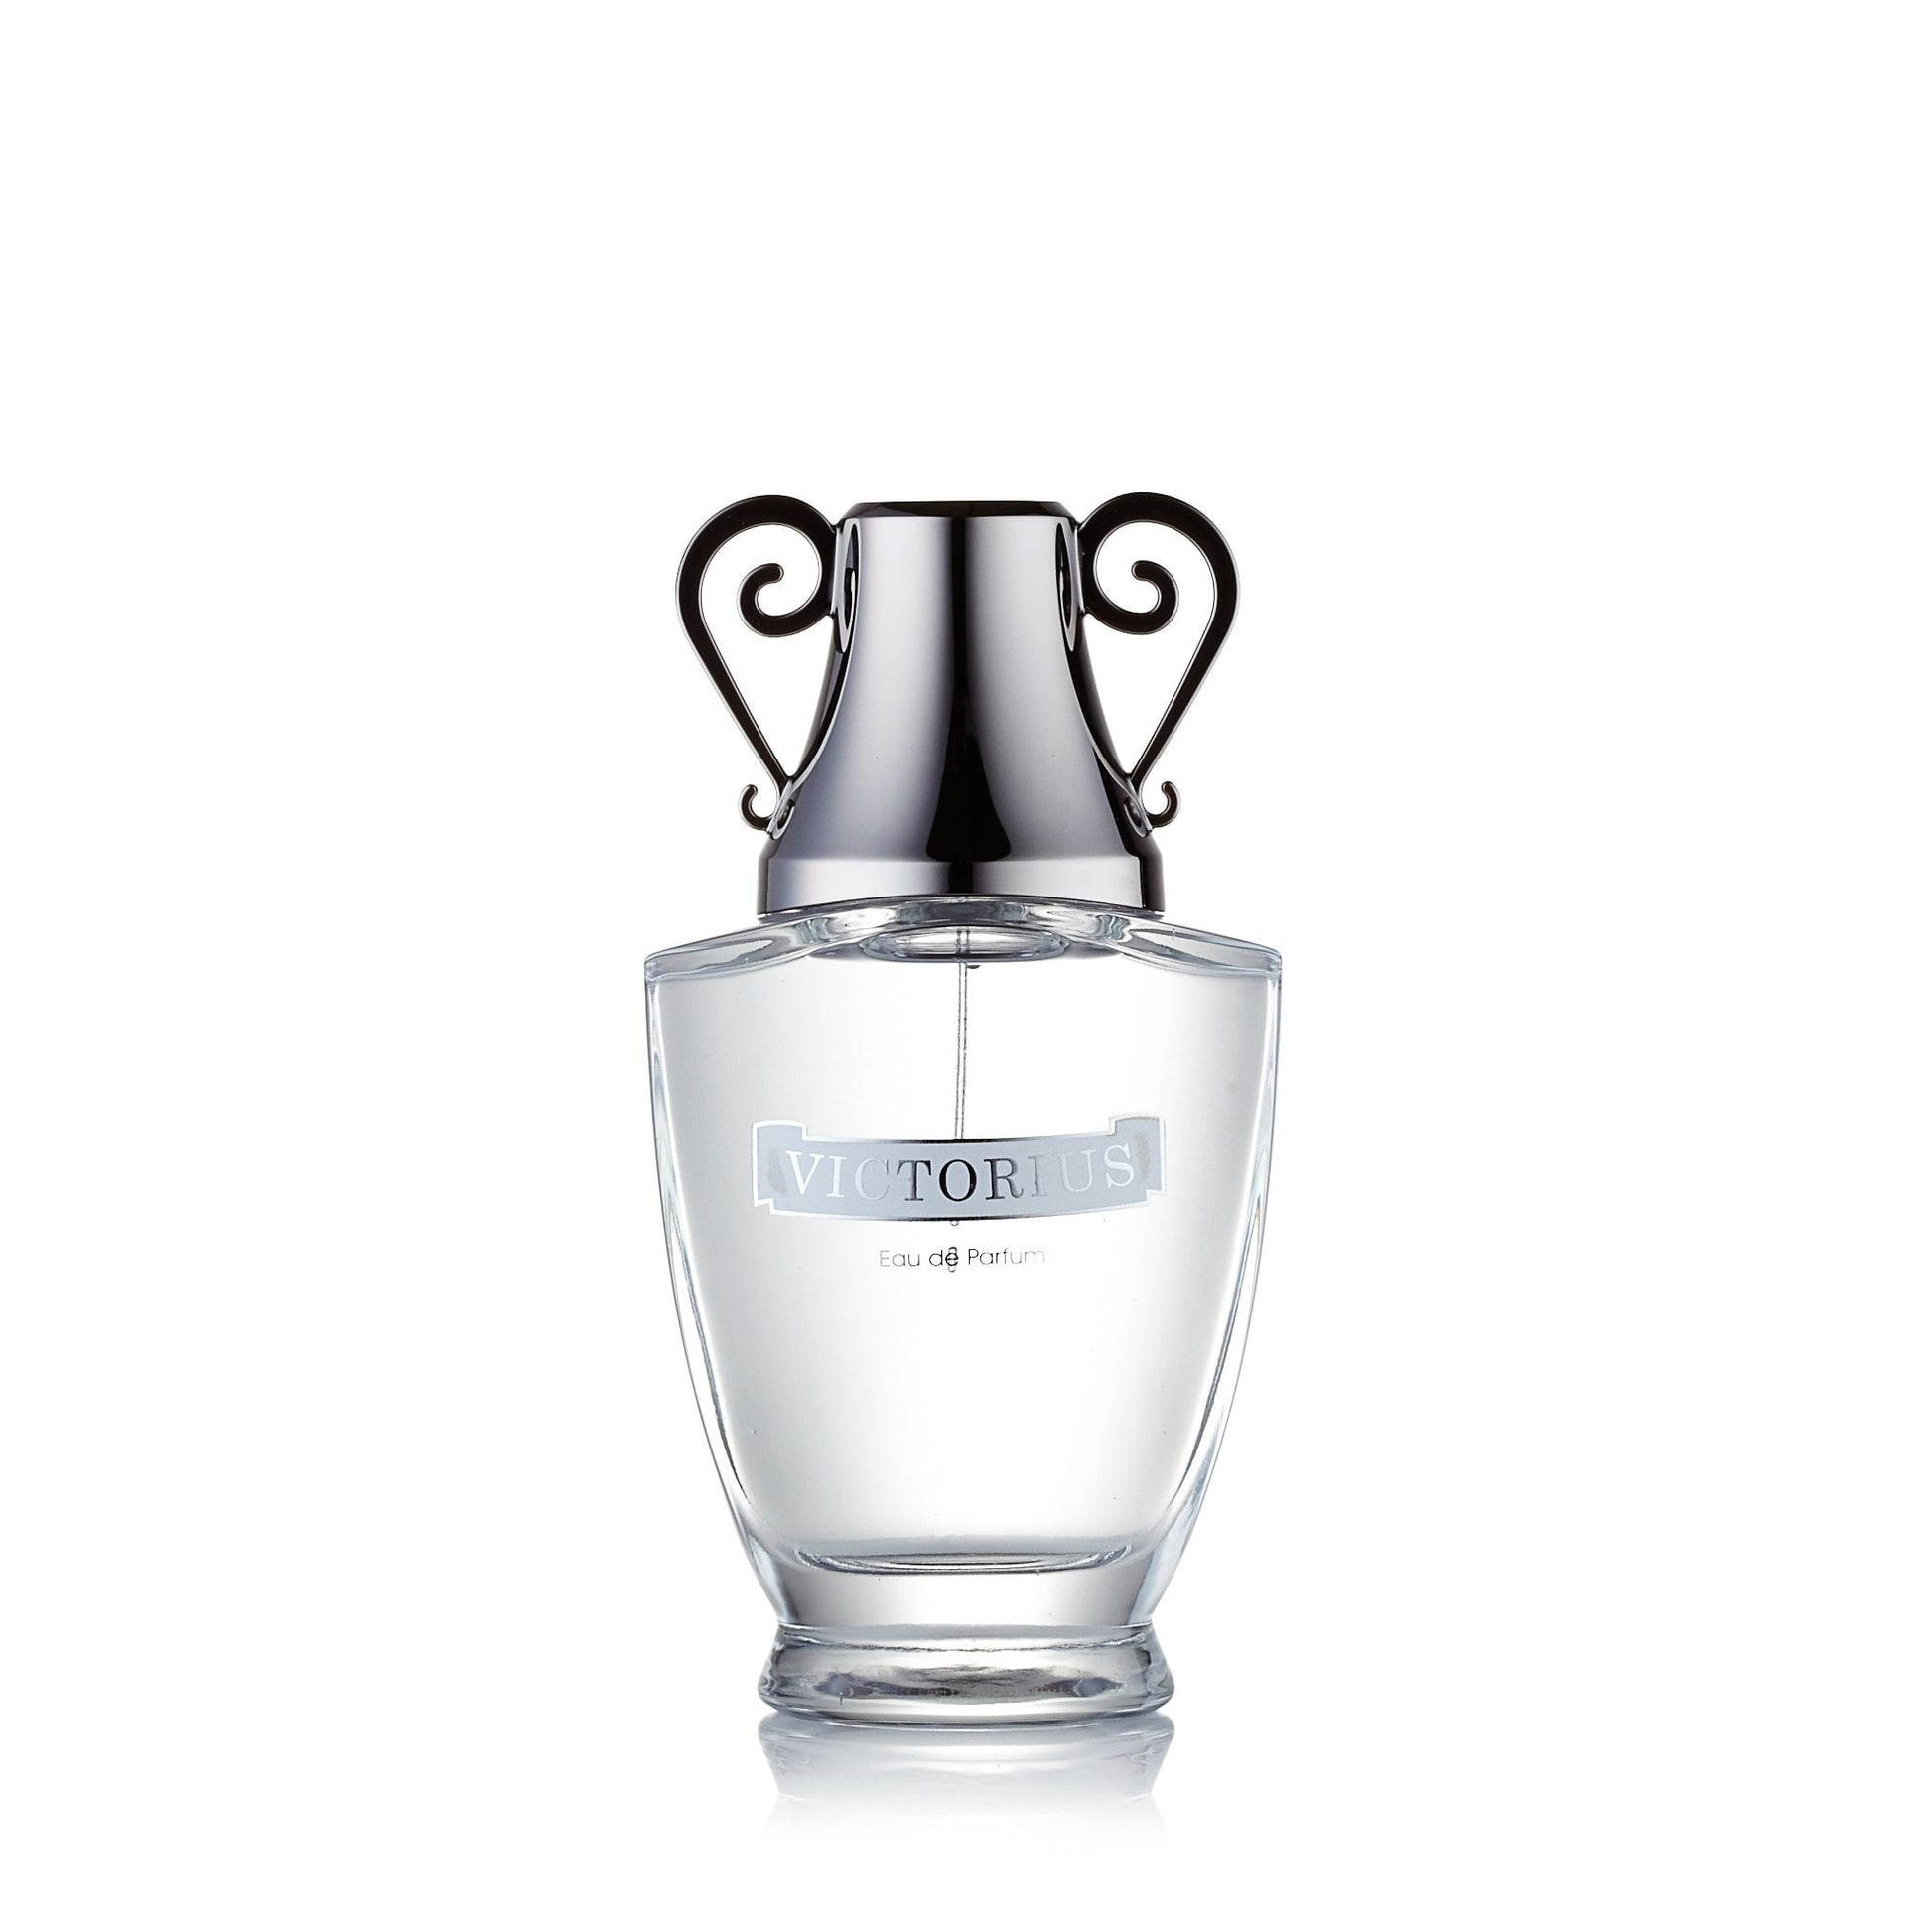 Victorius Eau de Parfum Spray for Men 3.3 oz. Click to open in modal